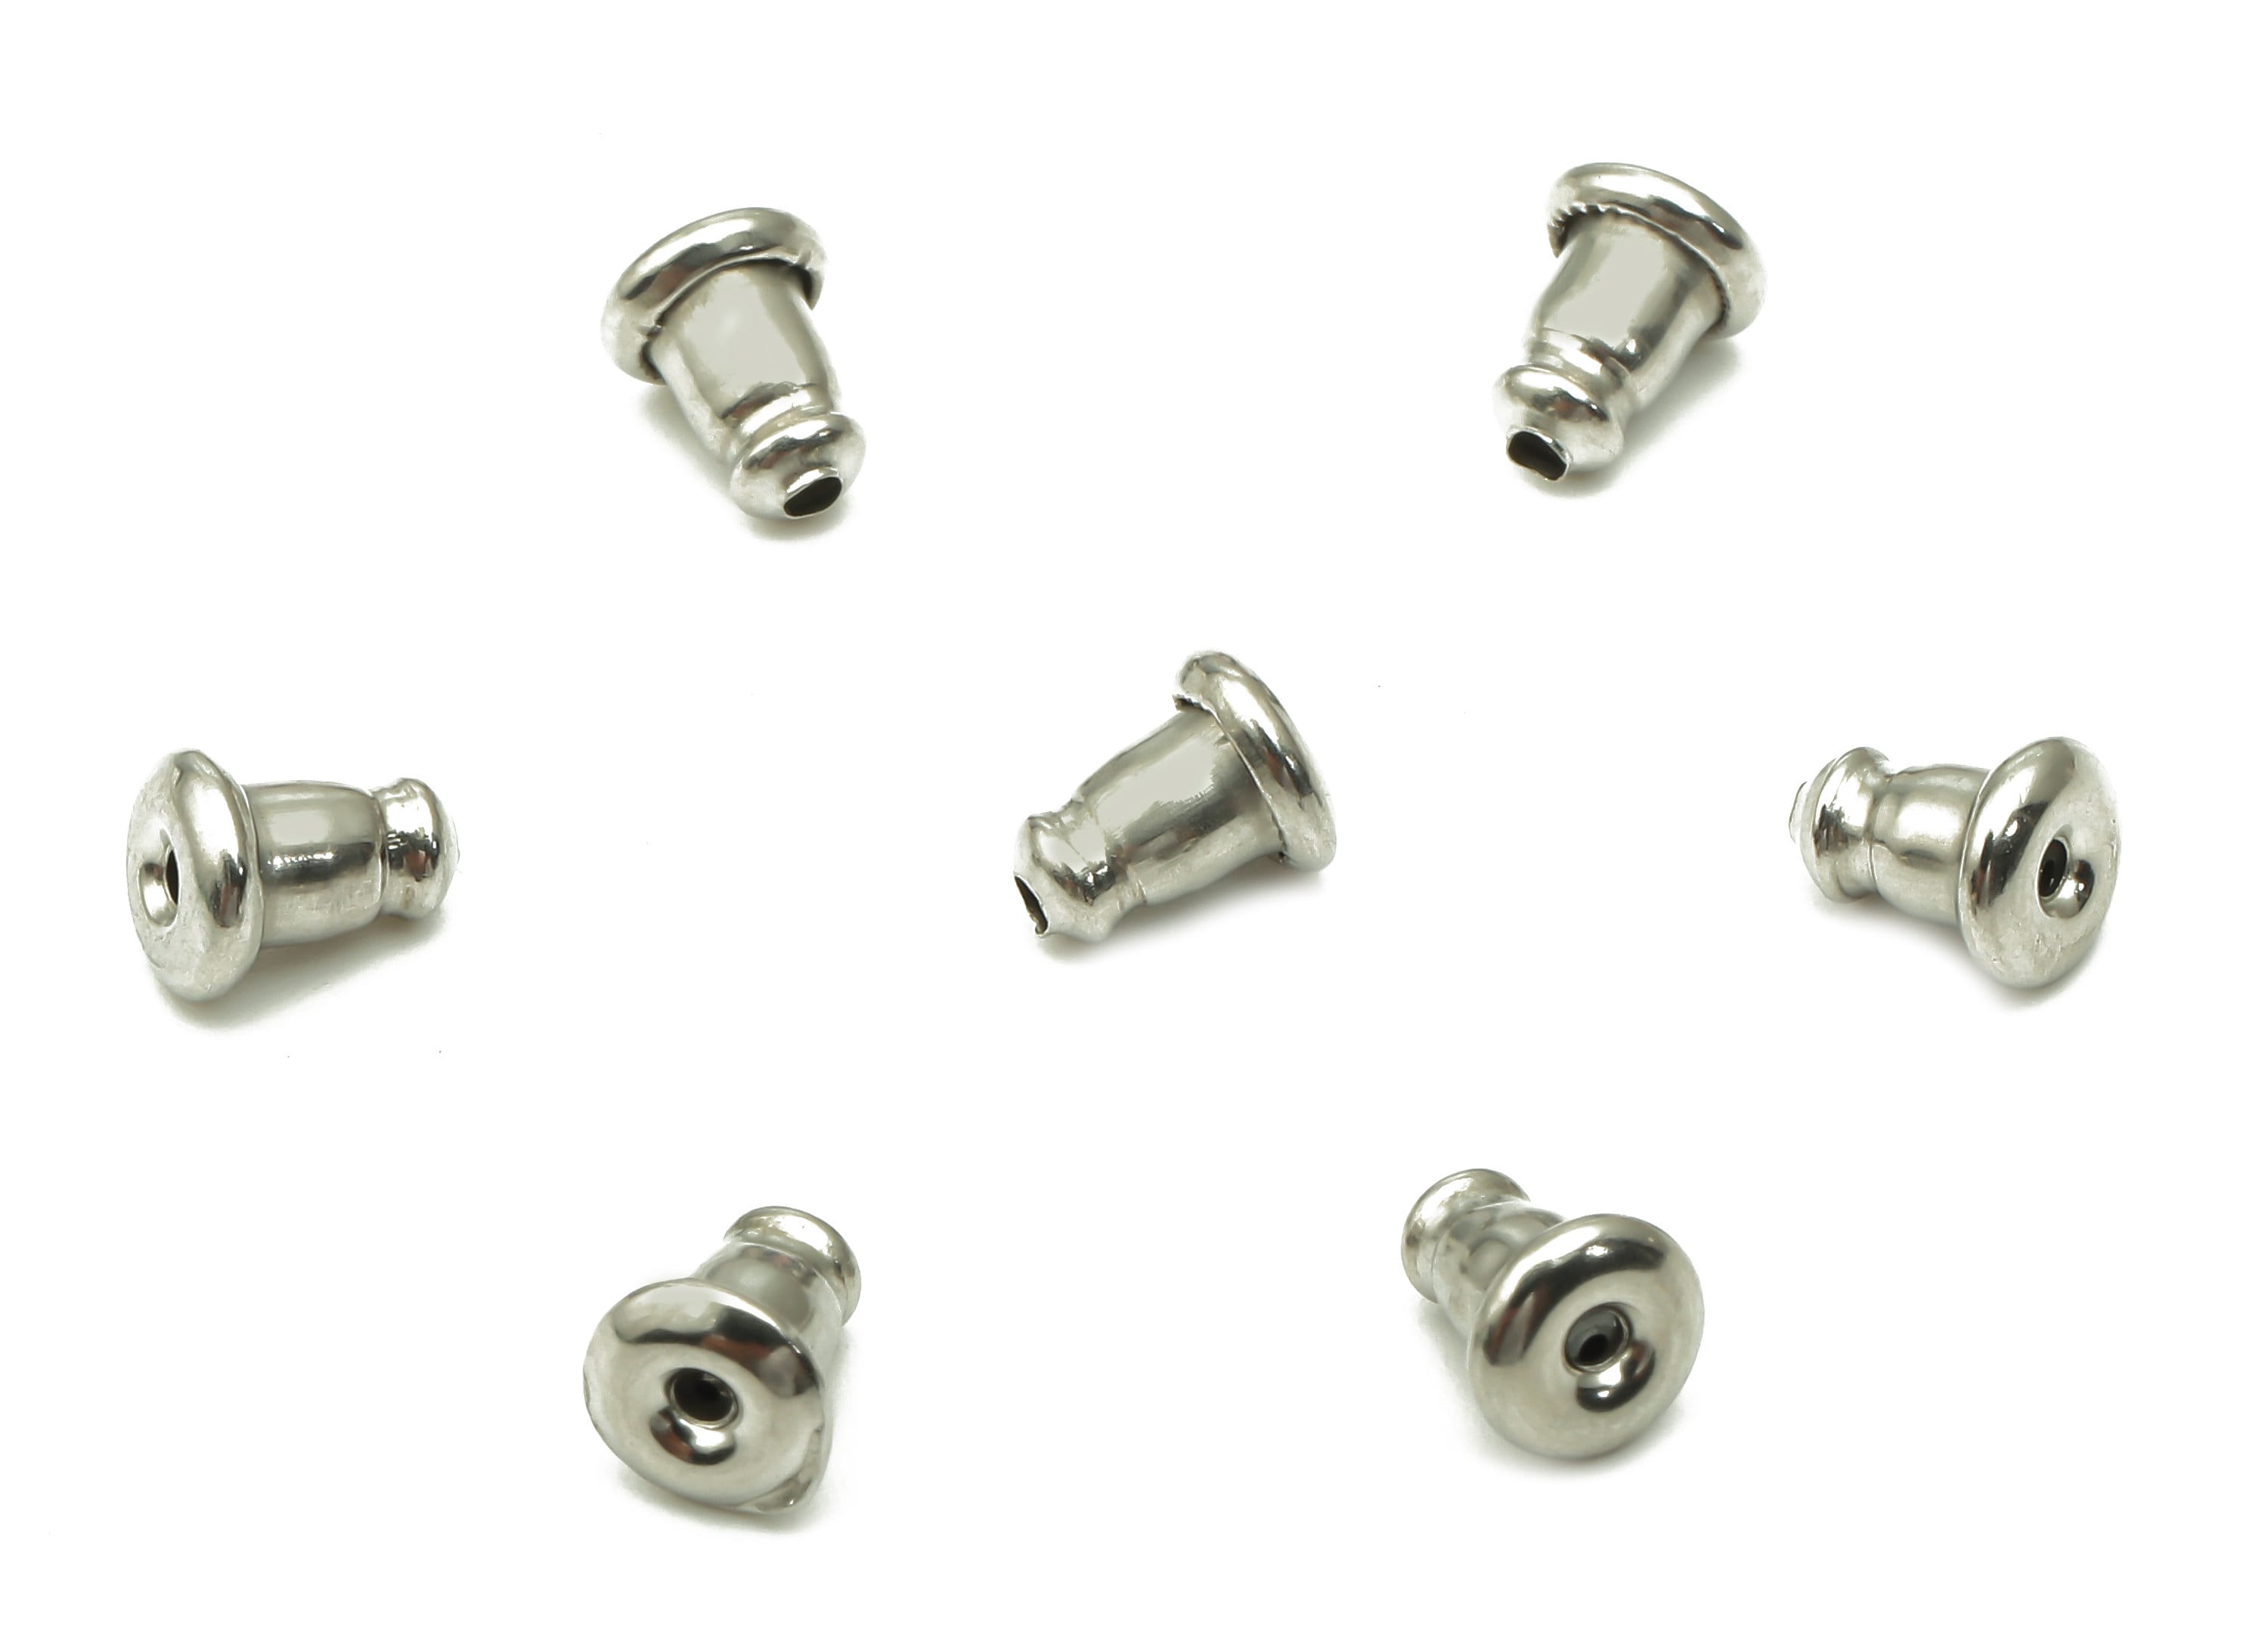 8prs Sterling Silver Earring Backs, Ear Back Stopper, 925 Silver Earring  Backing, Earring Nut for Jewelry Making, Round Ear Nut 4mm 5mm 6mm 